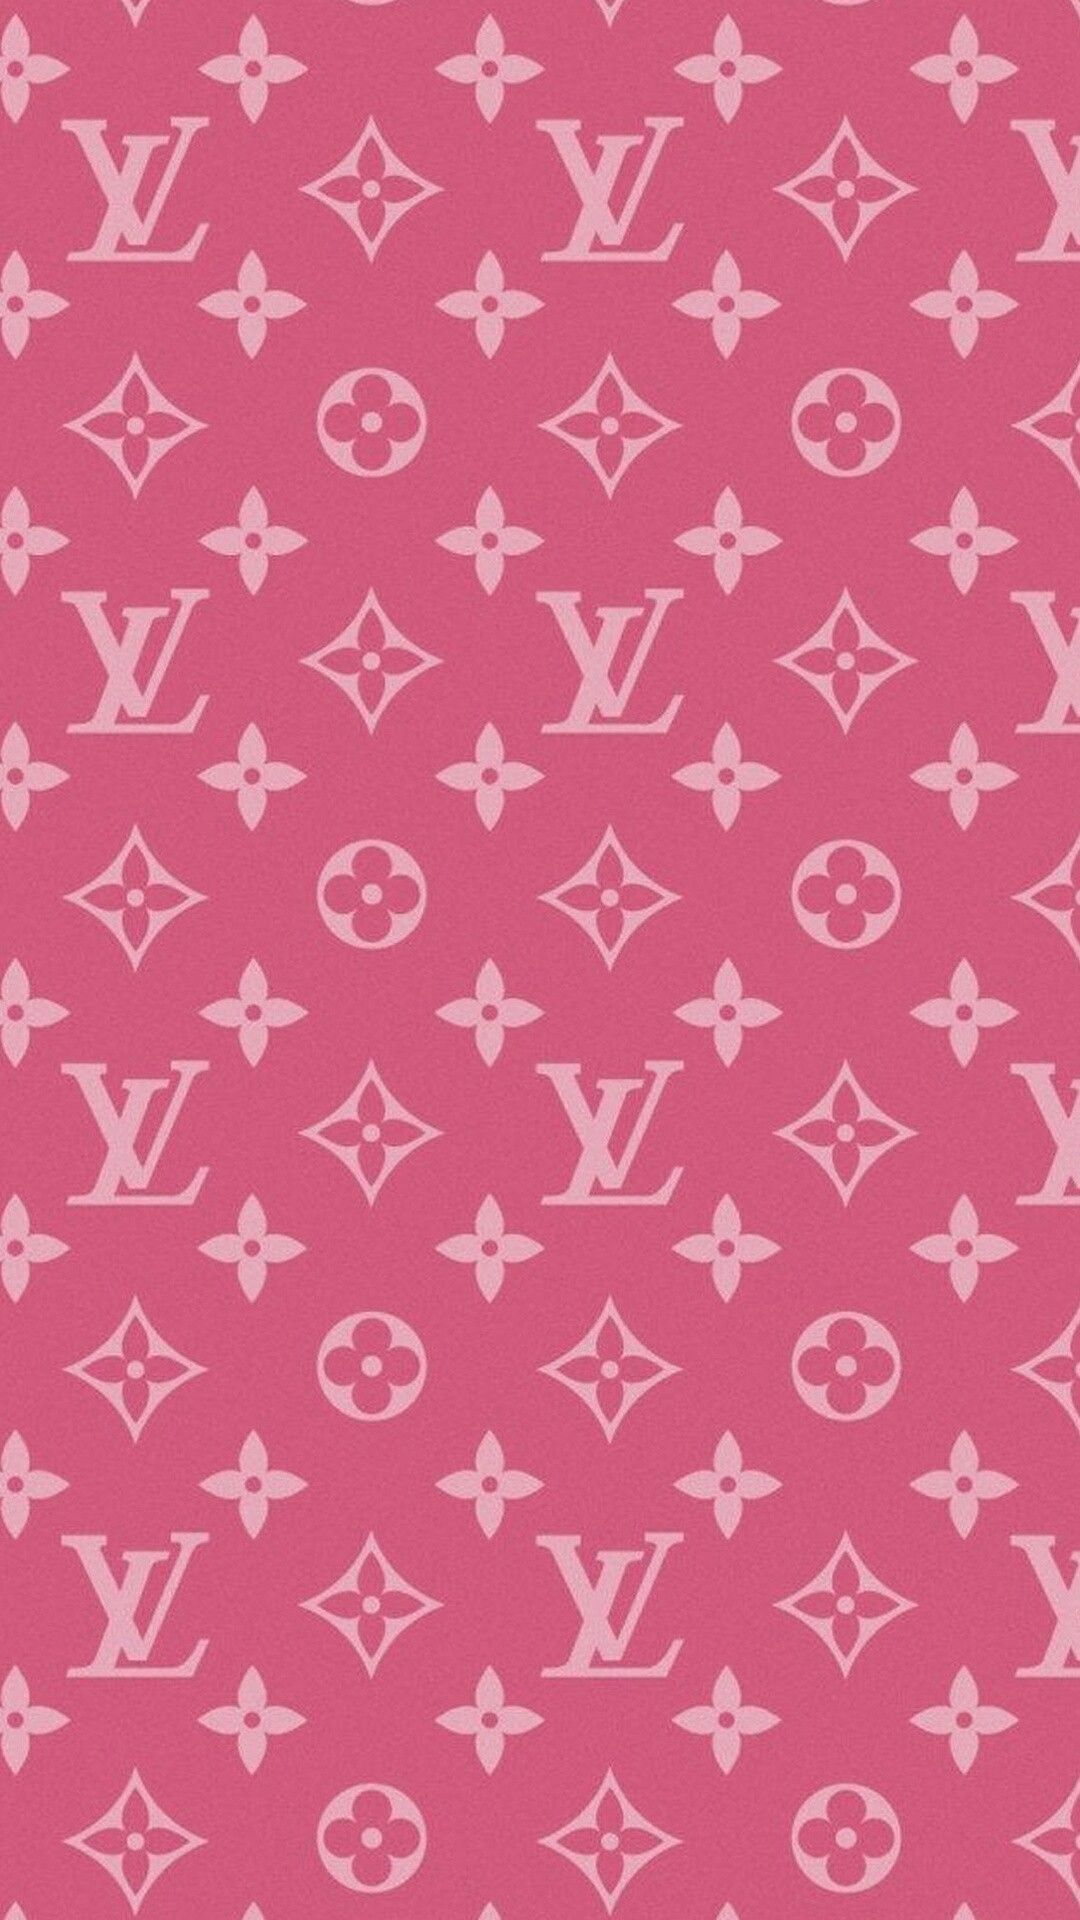 Louis Vuitton iPhone Wallpapers: Một chiếc điện thoại đầy màu sắc và đẳng cấp cùng các hình nền Louis Vuitton chất lượng cao? Đó là lý do tại sao bạn cần phải xem qua các hình nền của chúng tôi. Với sự kết hợp tuyệt vời giữa thiết kế độc đáo của Louis Vuitton và sự sang trọng của iPhone, các hình nền này thực sự sẽ khiến bạn chú ý.